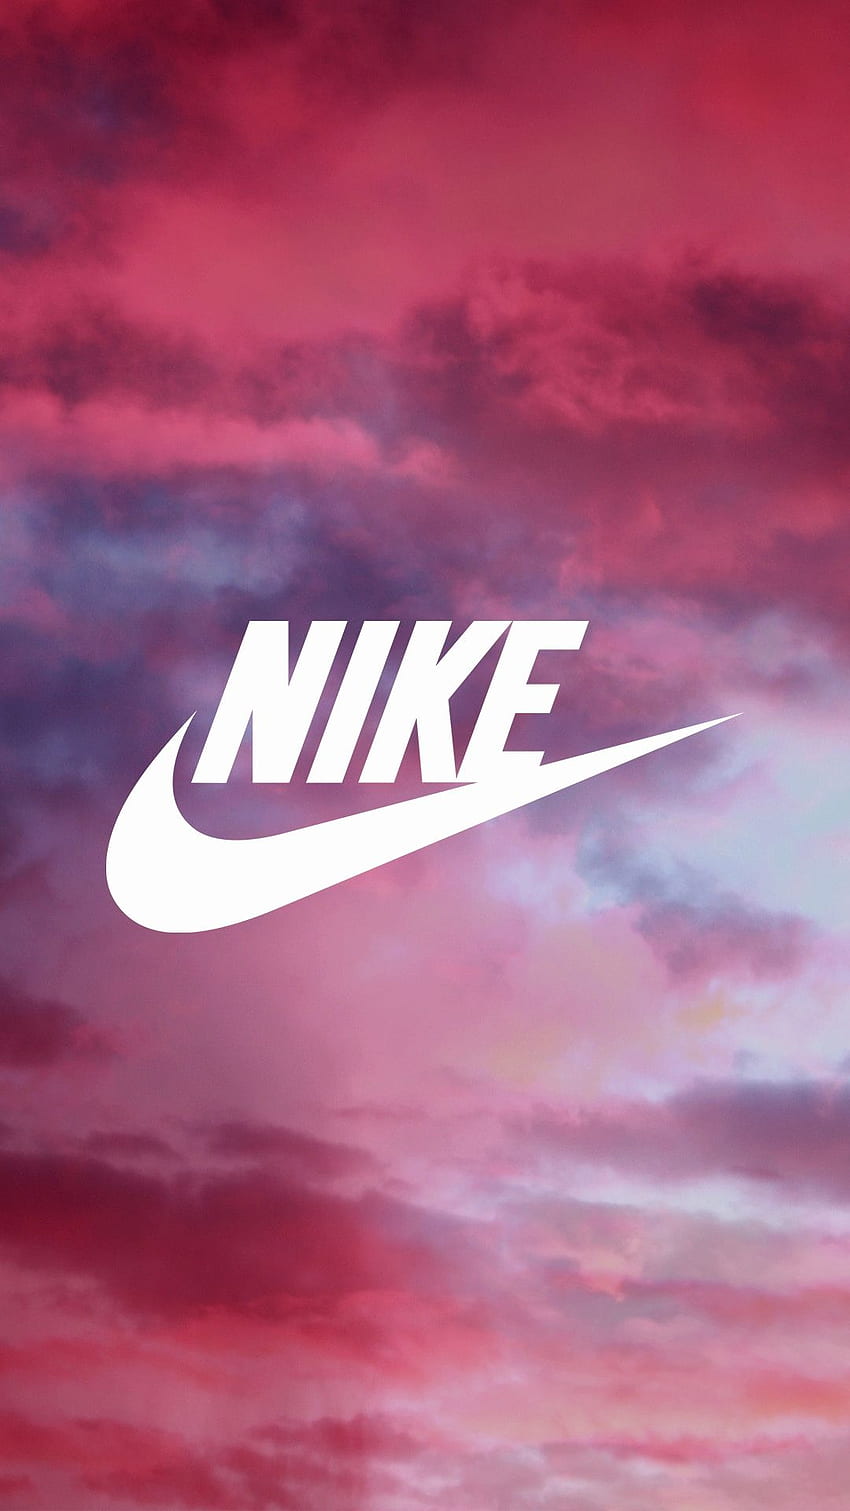 Nếu bạn muốn tìm kiếm một hình nền Nike đẹp với chất liệu phù hợp cho độ phân giải màn hình của mình thì Nike background là sự lựa chọn hoàn hảo. Mang lại nét tinh tế mà không kém phần độc đáo, hình nền Nike là sự kết hợp giữa thể thao và thời trang.